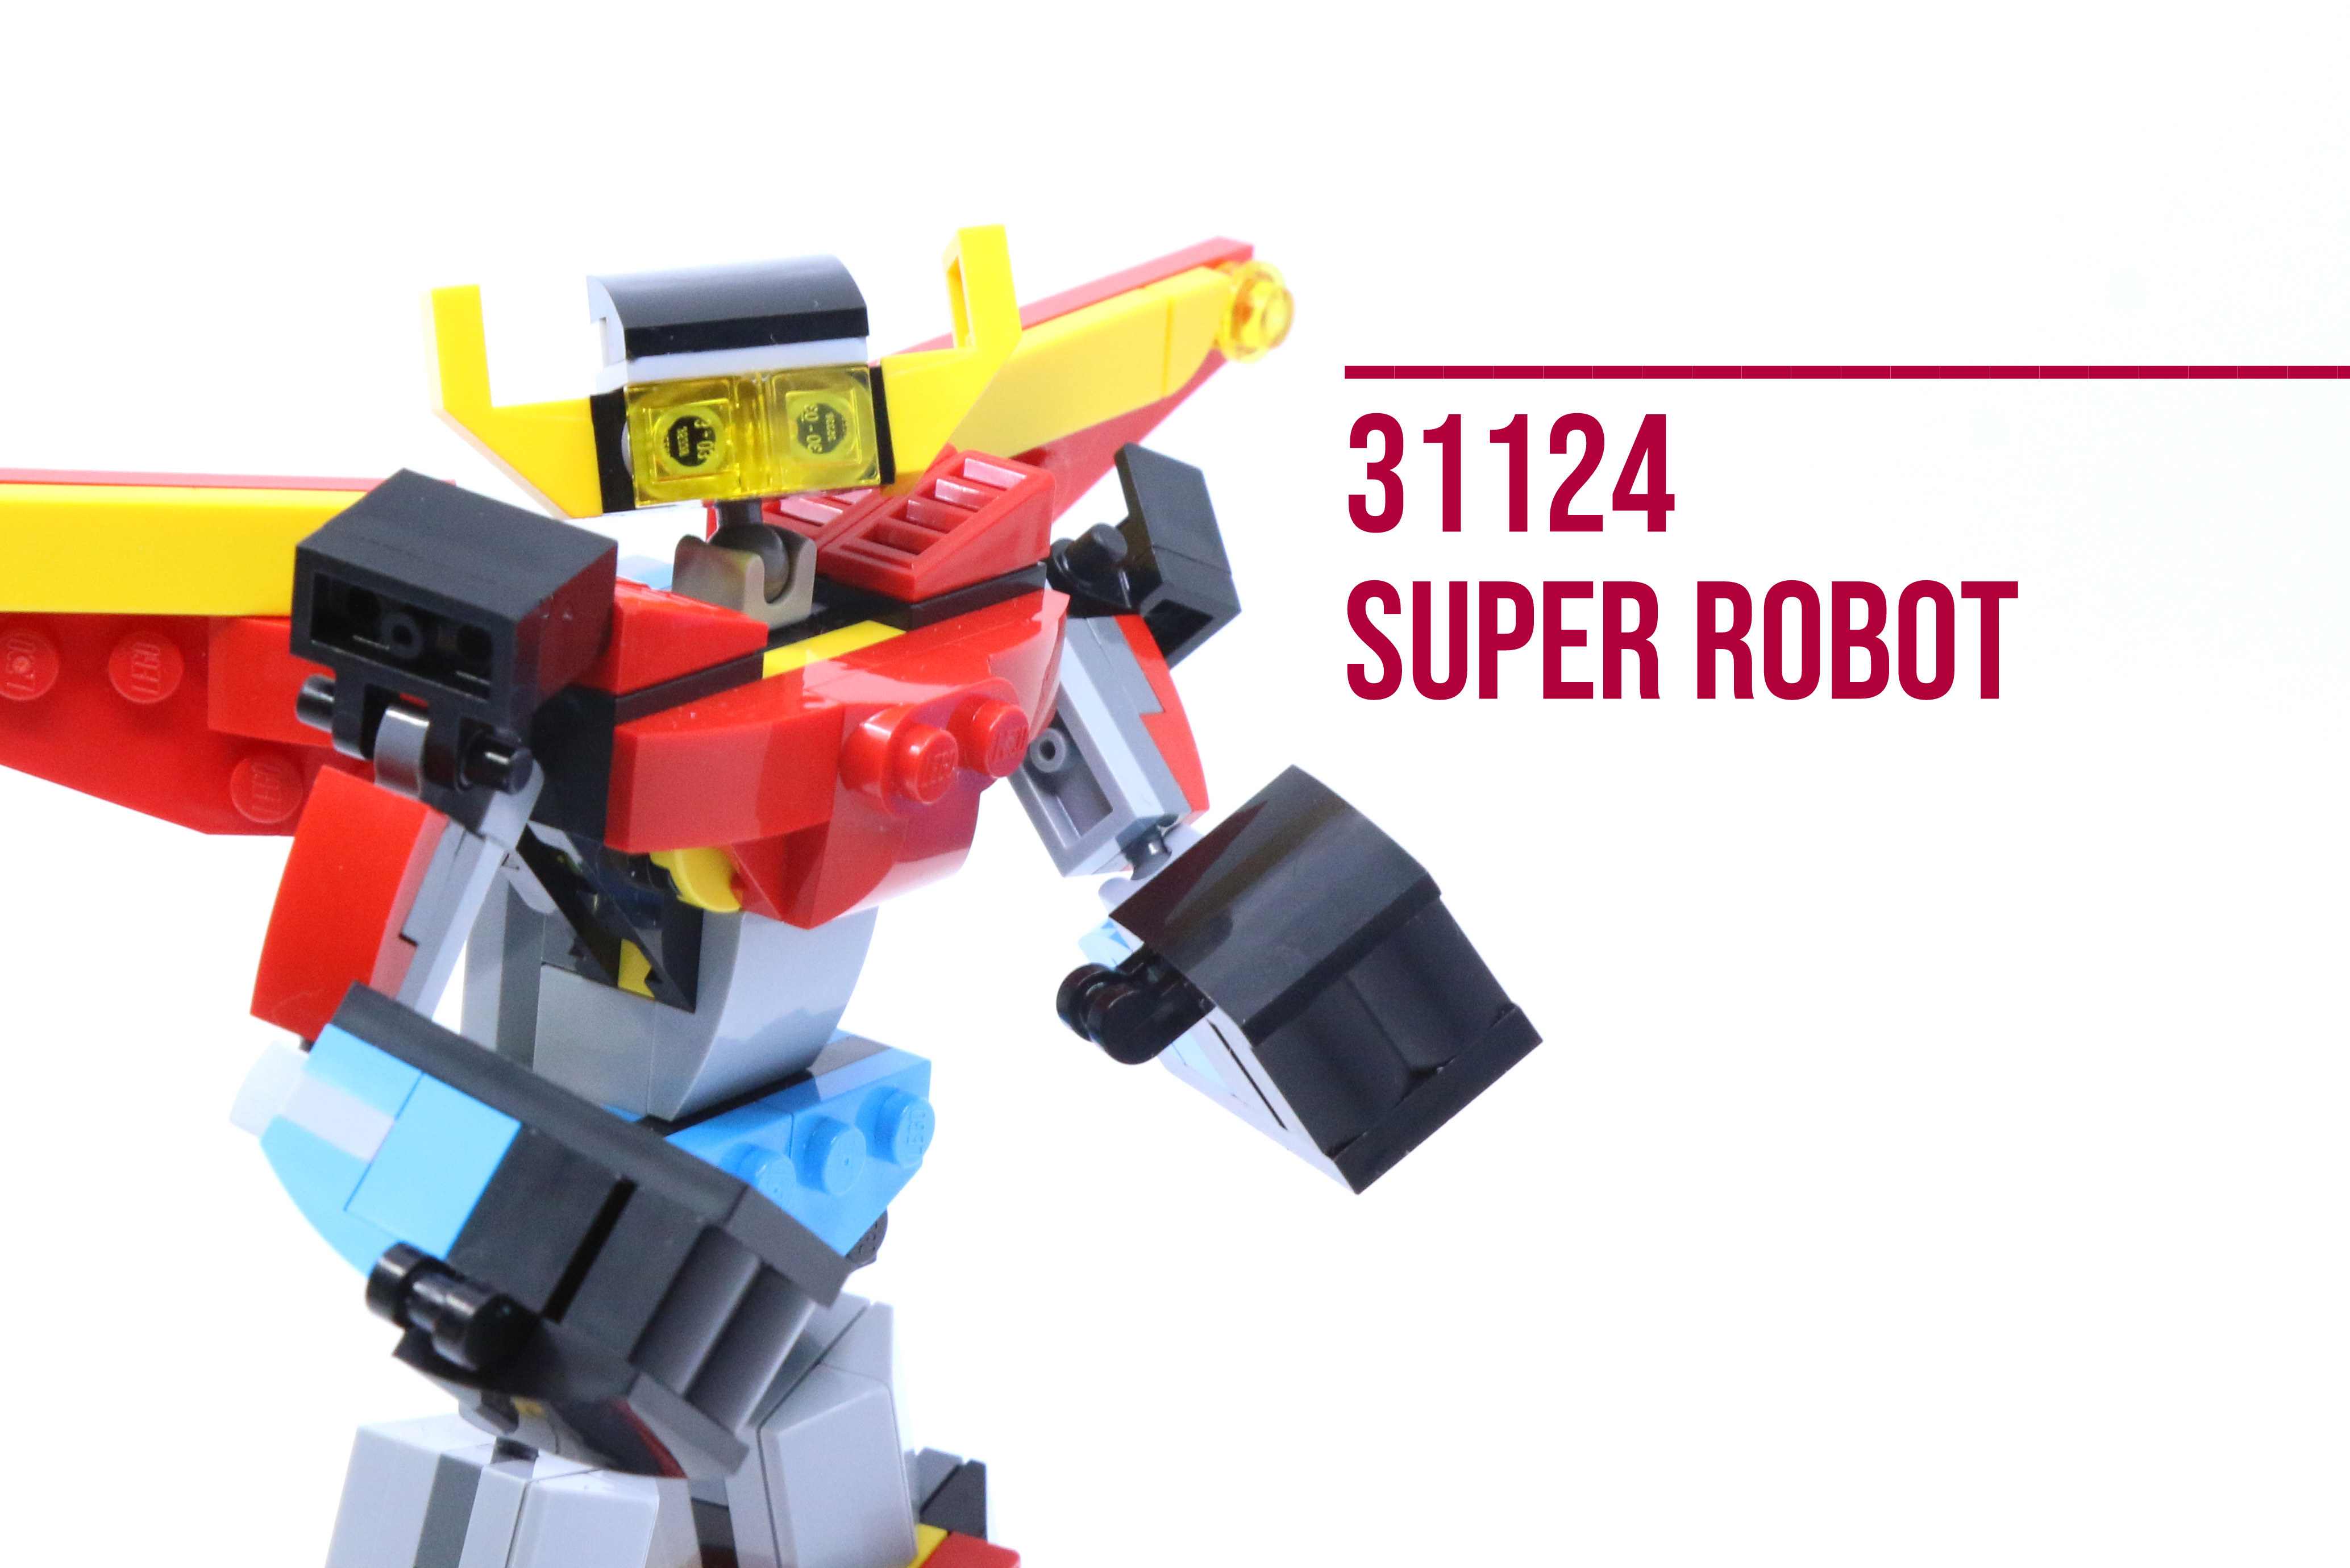 at opfinde At interagere Kæledyr Review: LEGO 31124 Super Robot - Jay's Brick Blog